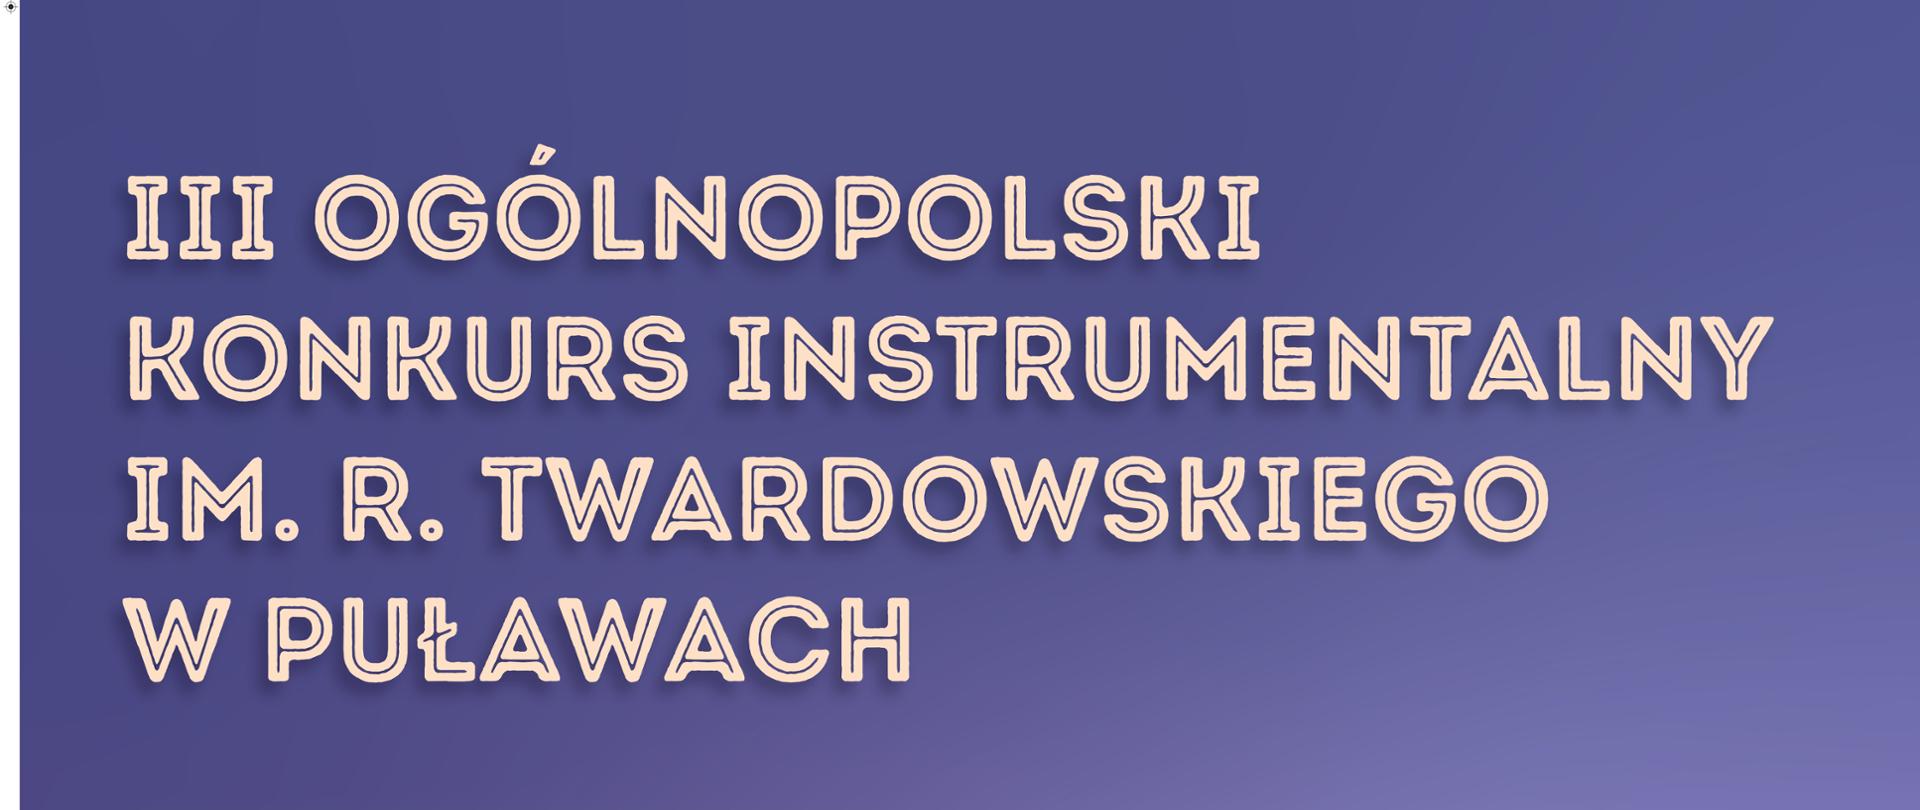 Informacja o Konkursie Instrumentalnym im. R. Twardowskiego na fioletowym tle